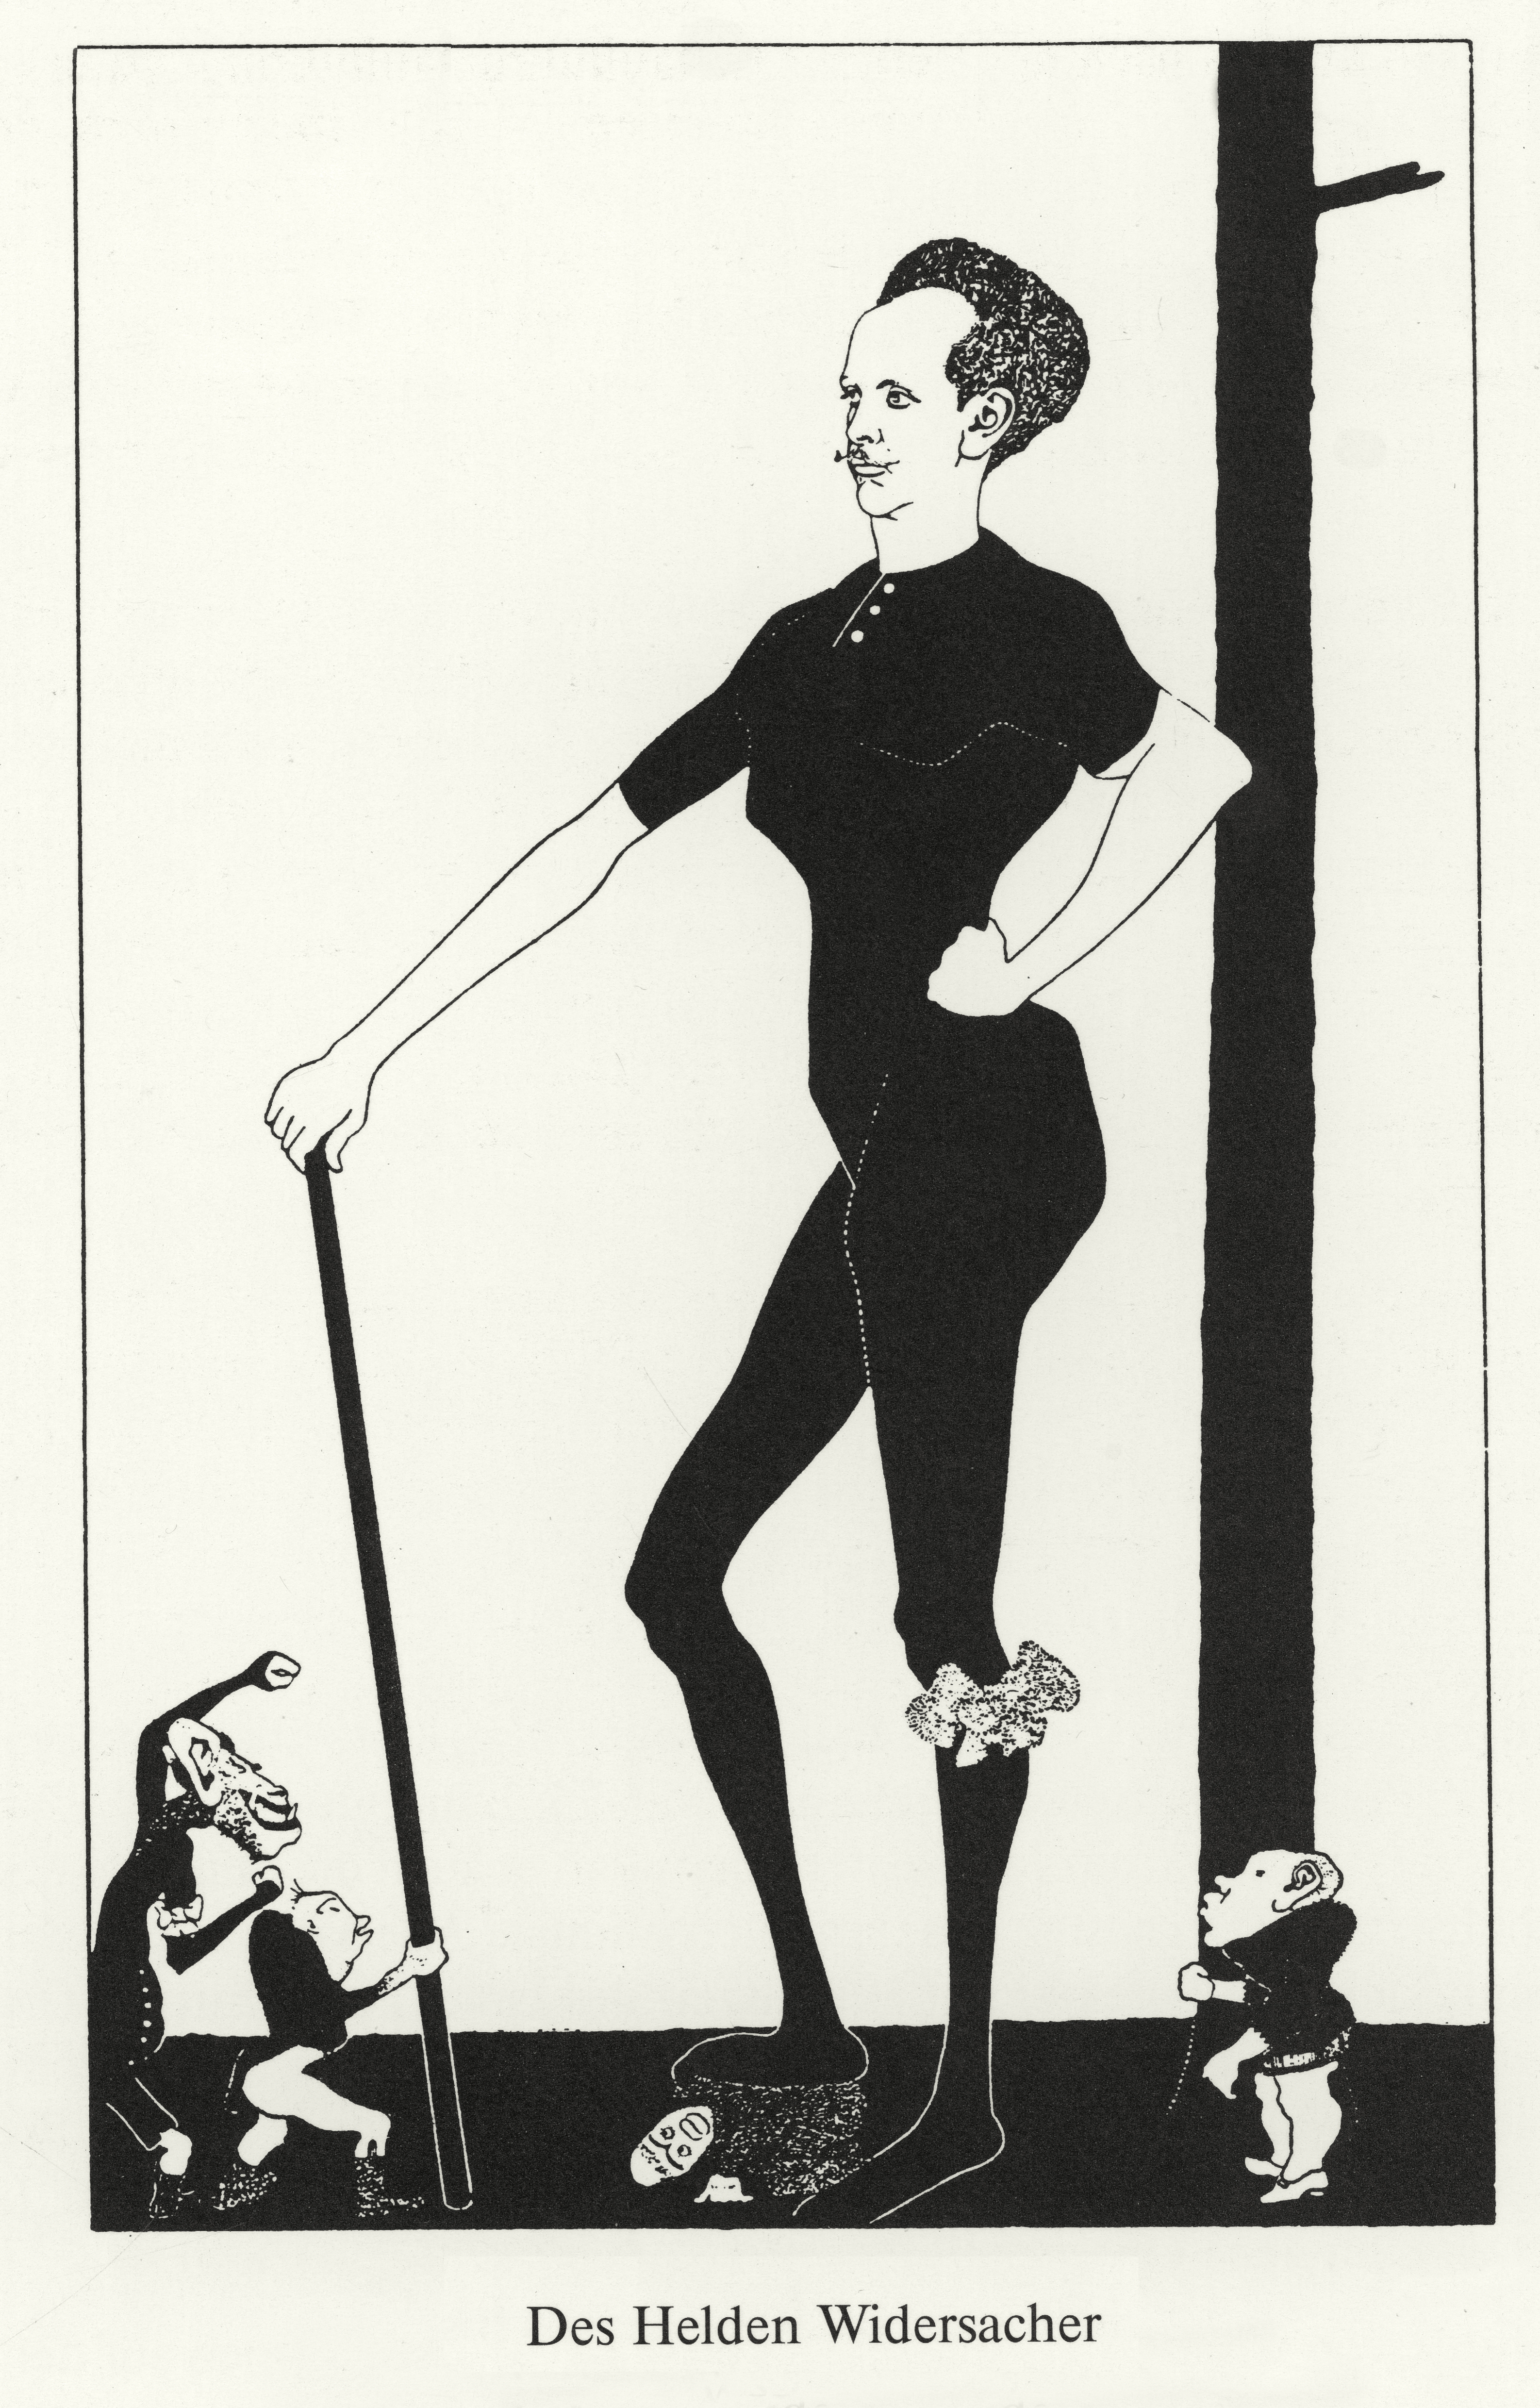 Zeichnung von einem übergroßen Richard Strauss mit Strumpfband und Gehstock, kleine Männchen um ihn herum